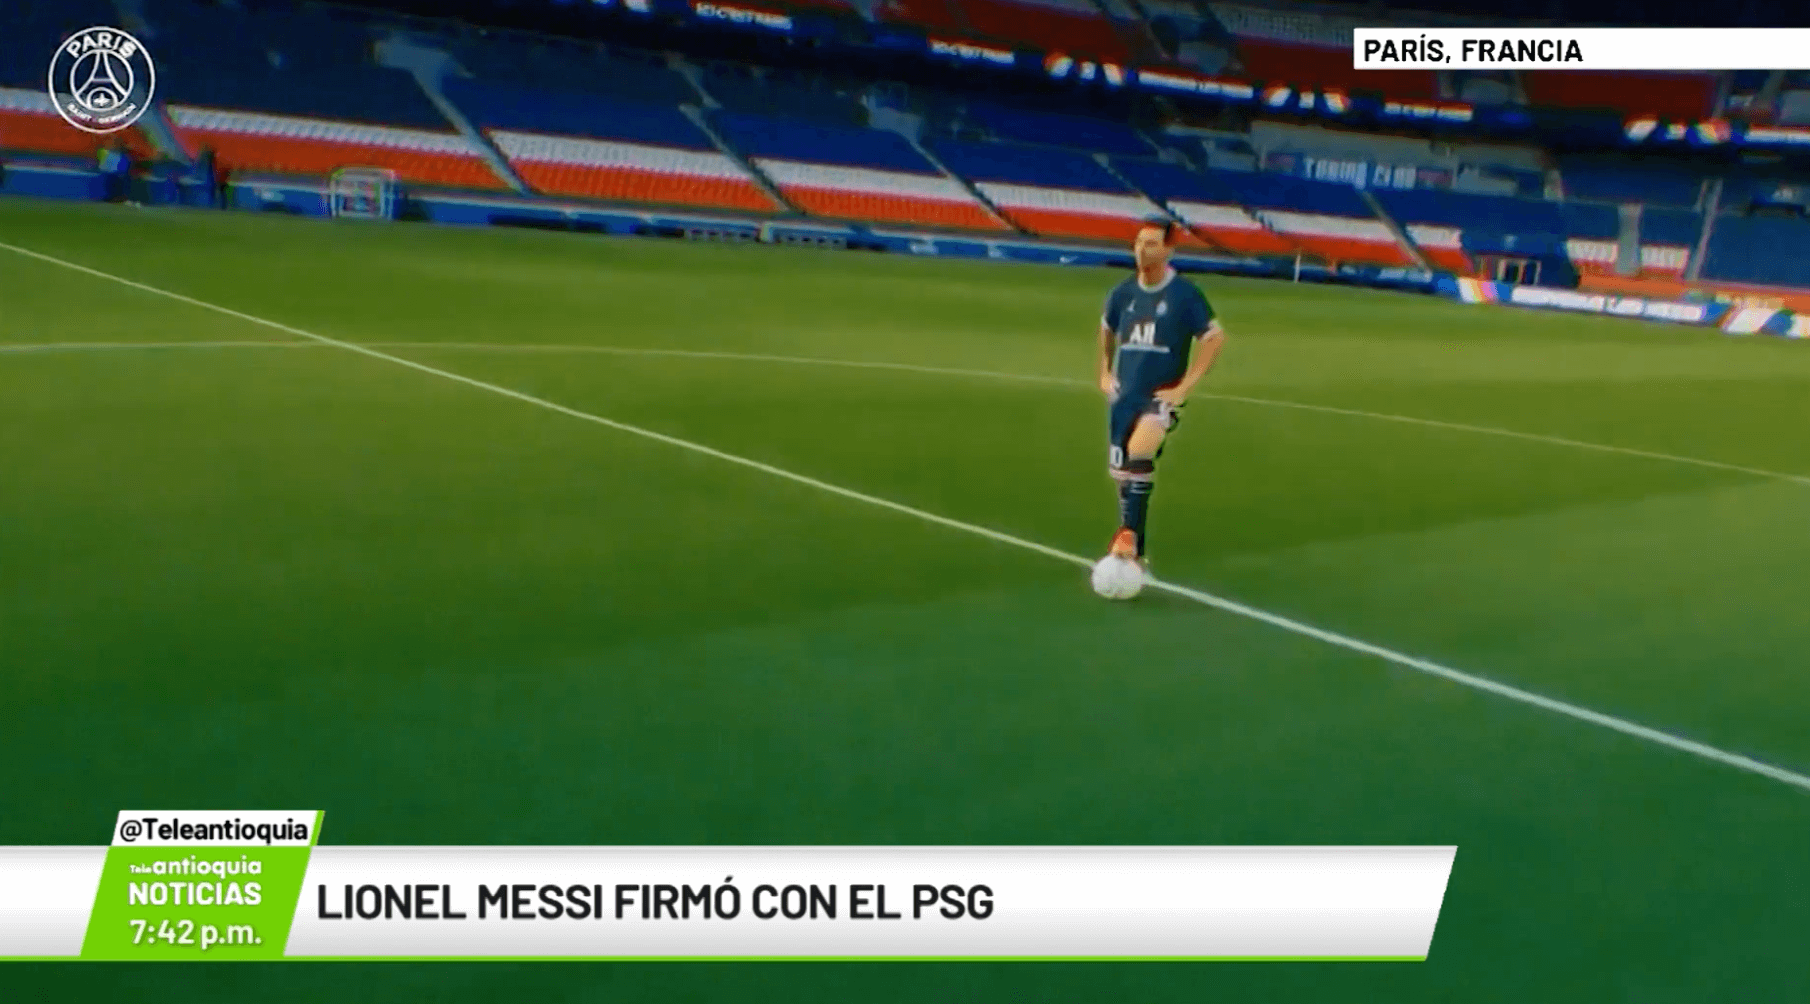 Lionel Messi firmó con el PSG